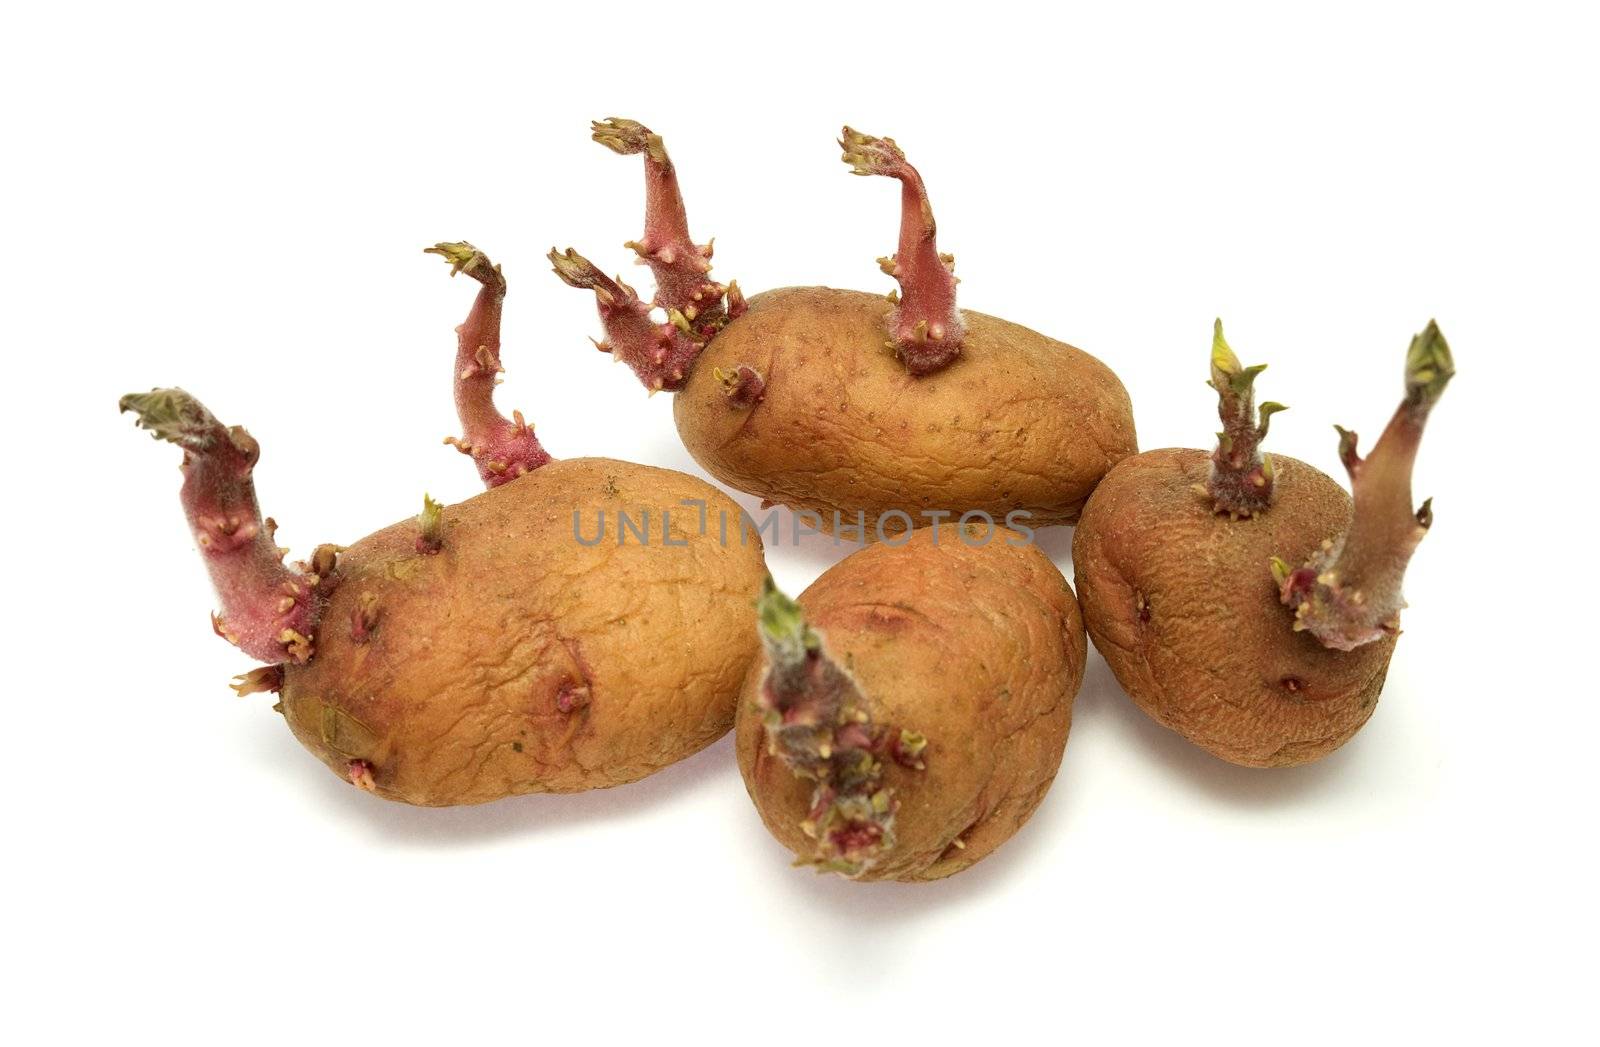 Four progrown tubers of a potato by pzaxe